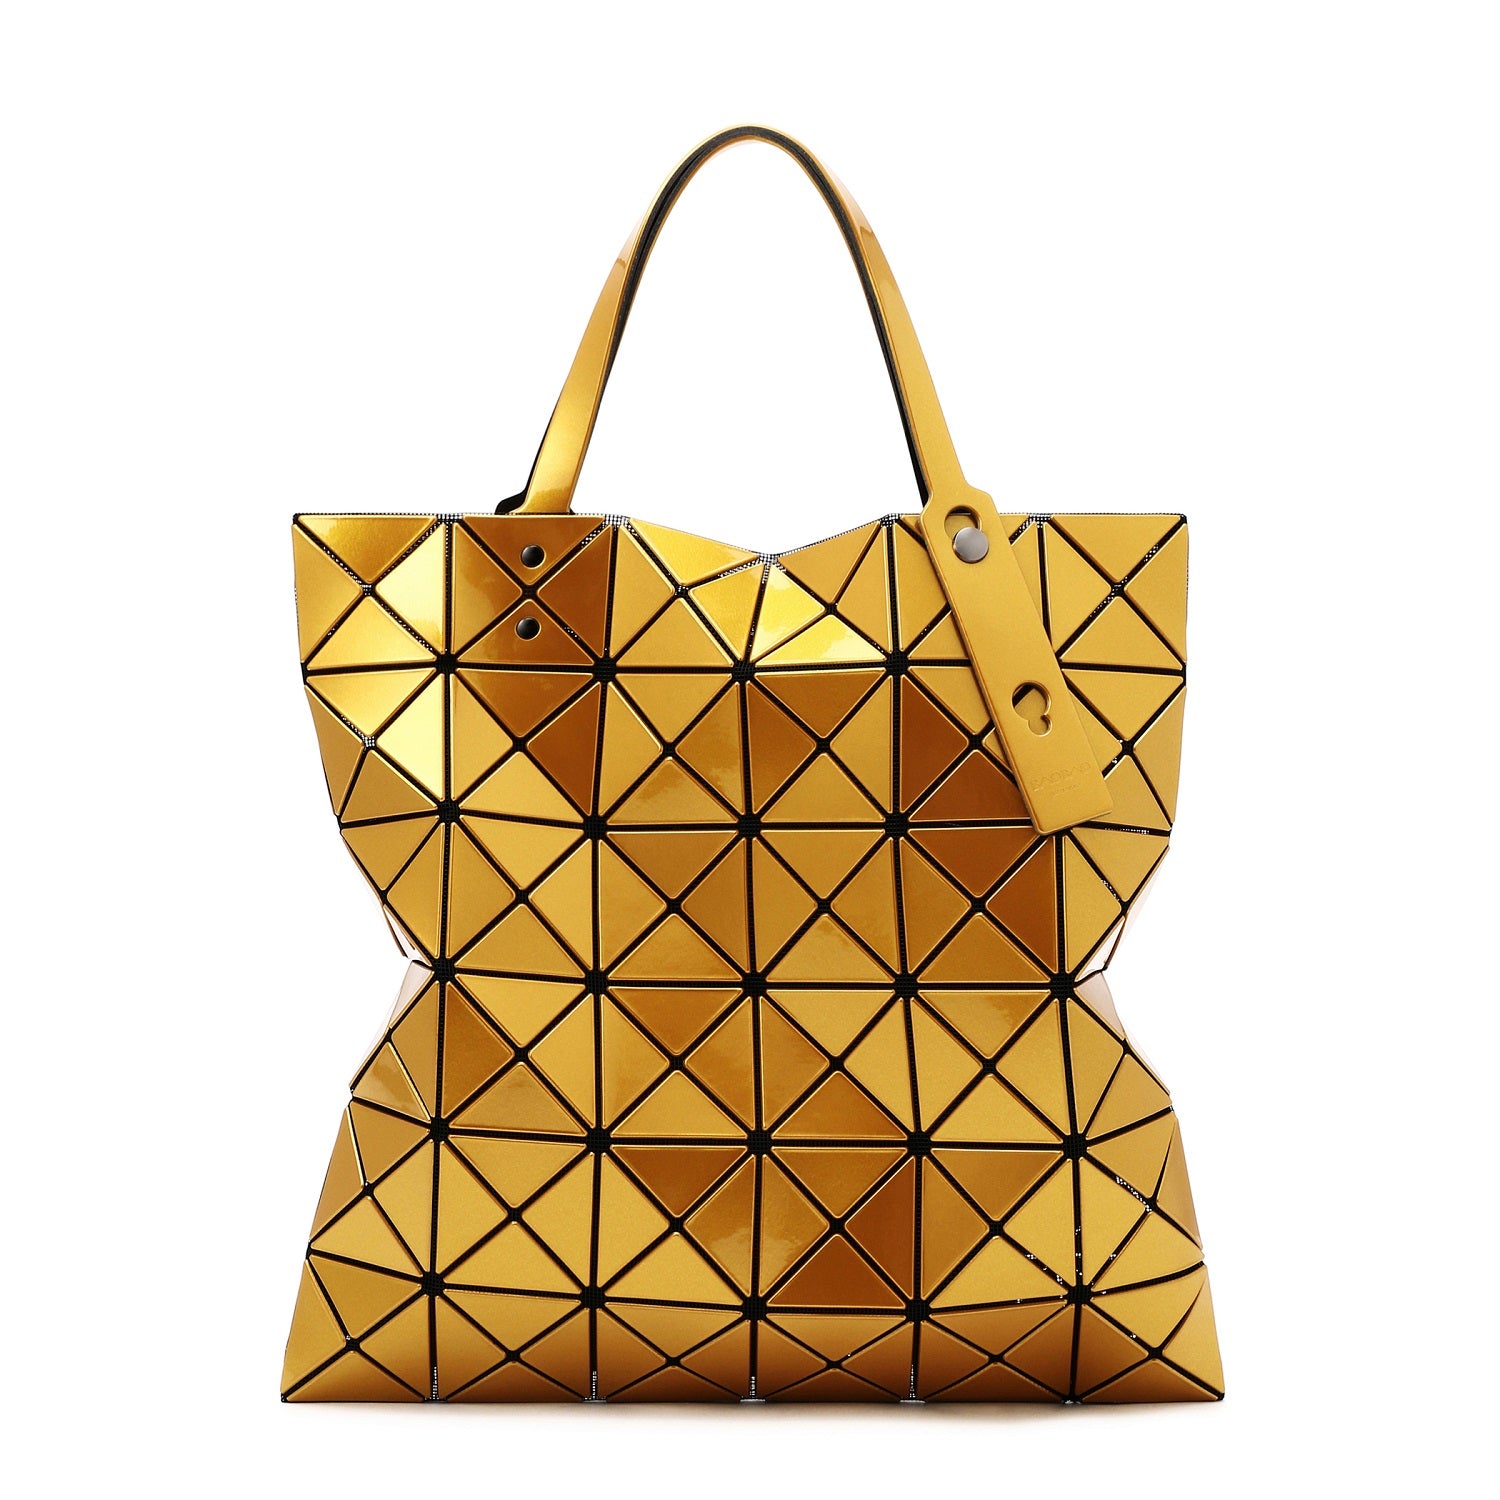 BAO BAO ISSEY MIYAKE Bag Limited Edition£435 (RRP £635) | eBay